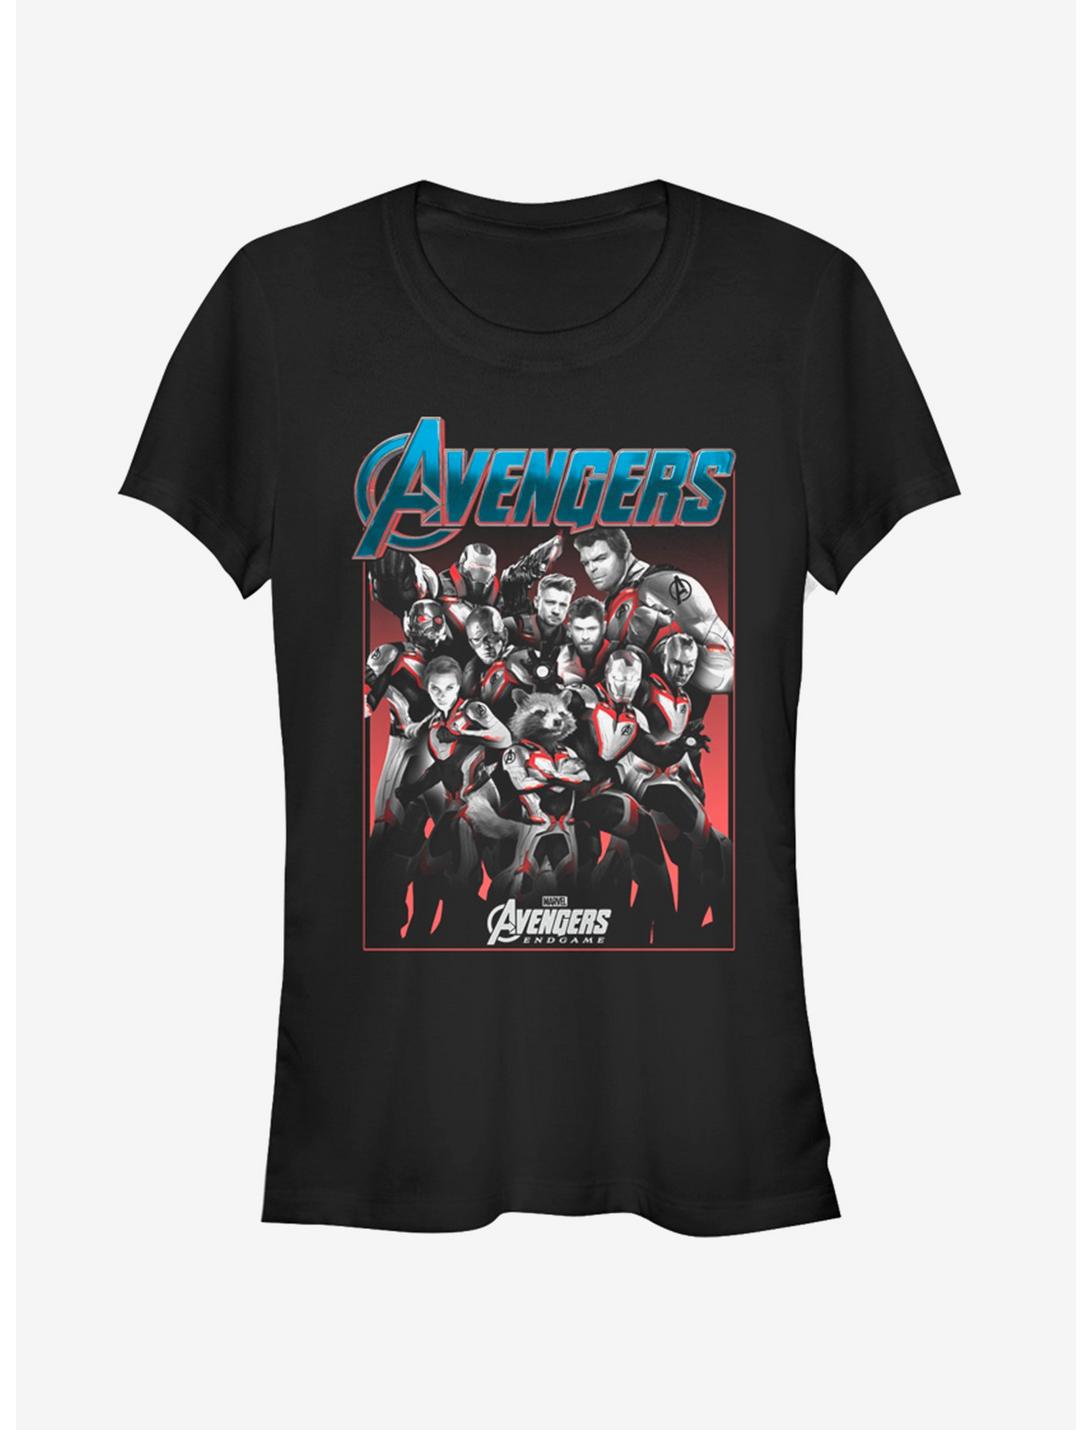 Marvel Avengers: Endgame Group Shot Girls T-Shirt, BLACK, hi-res